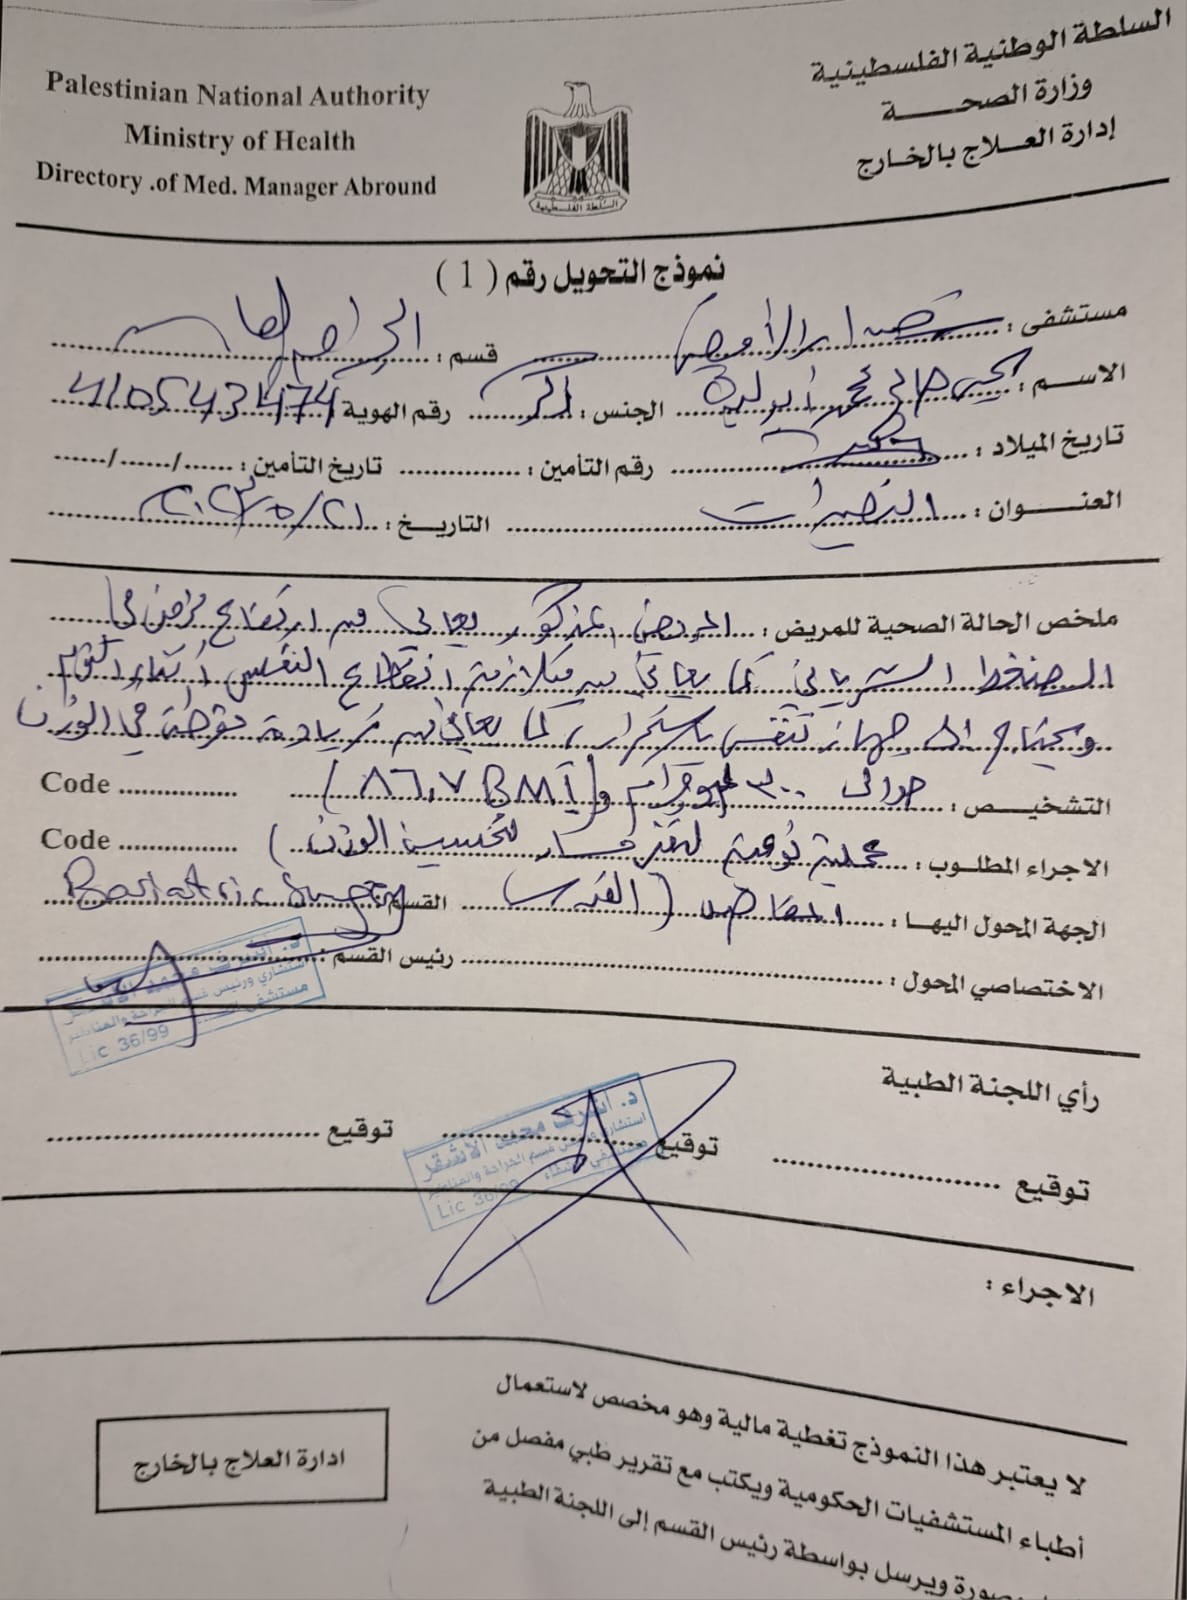 تقارير طبية: مواطن يُناشد وزيرة الصحة بسرعة إجراء تحويلة لعلاجه خارج غزّة